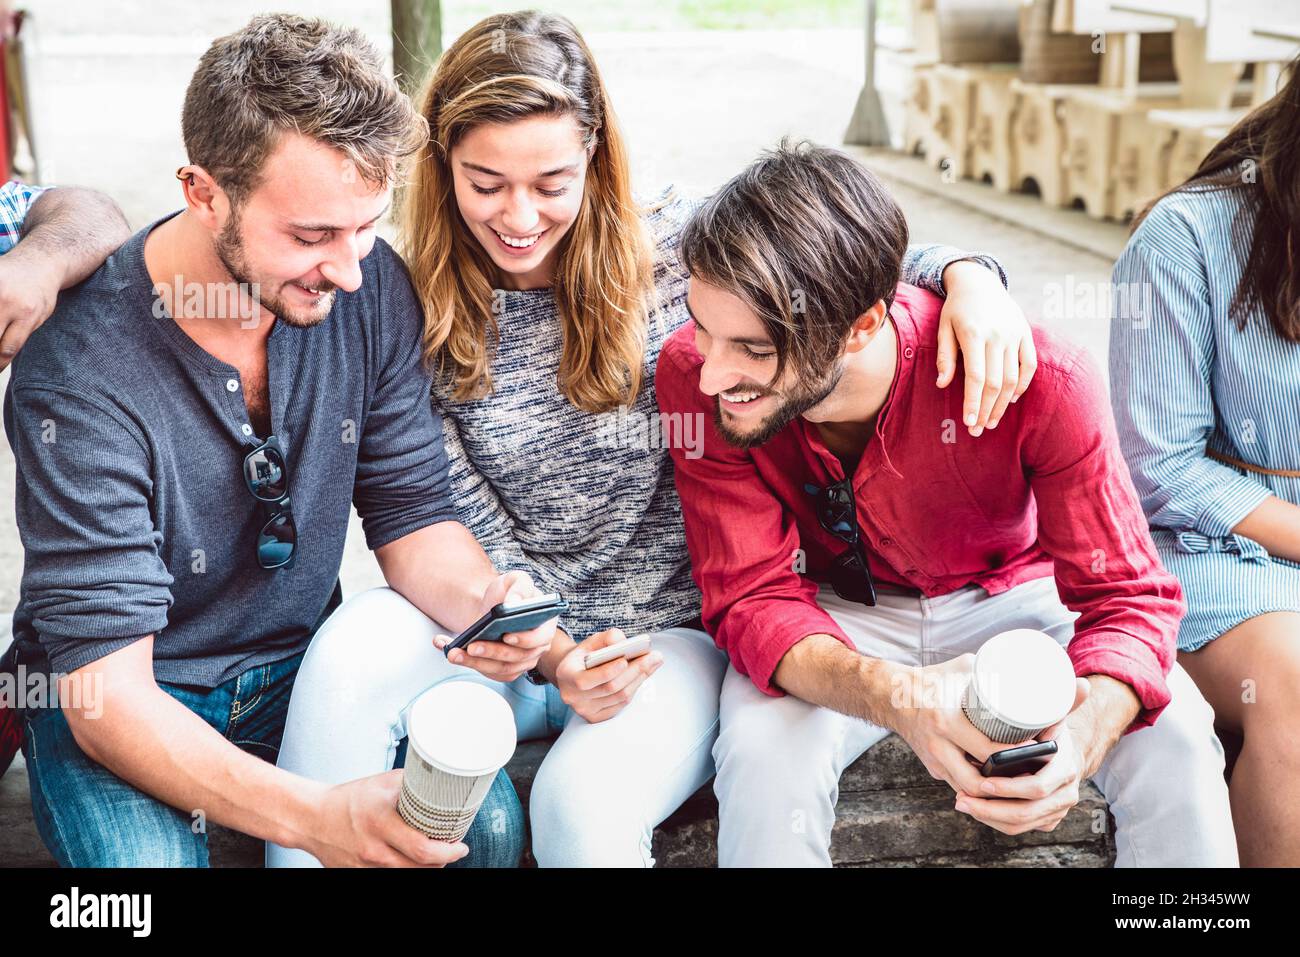 Multikulturelle Gruppe milenial Menschen mit Smartphone in der Stadt College Hinterhof - Junge Jungs ein Mädchen süchtig nach Handy-Nutzung Stockfoto